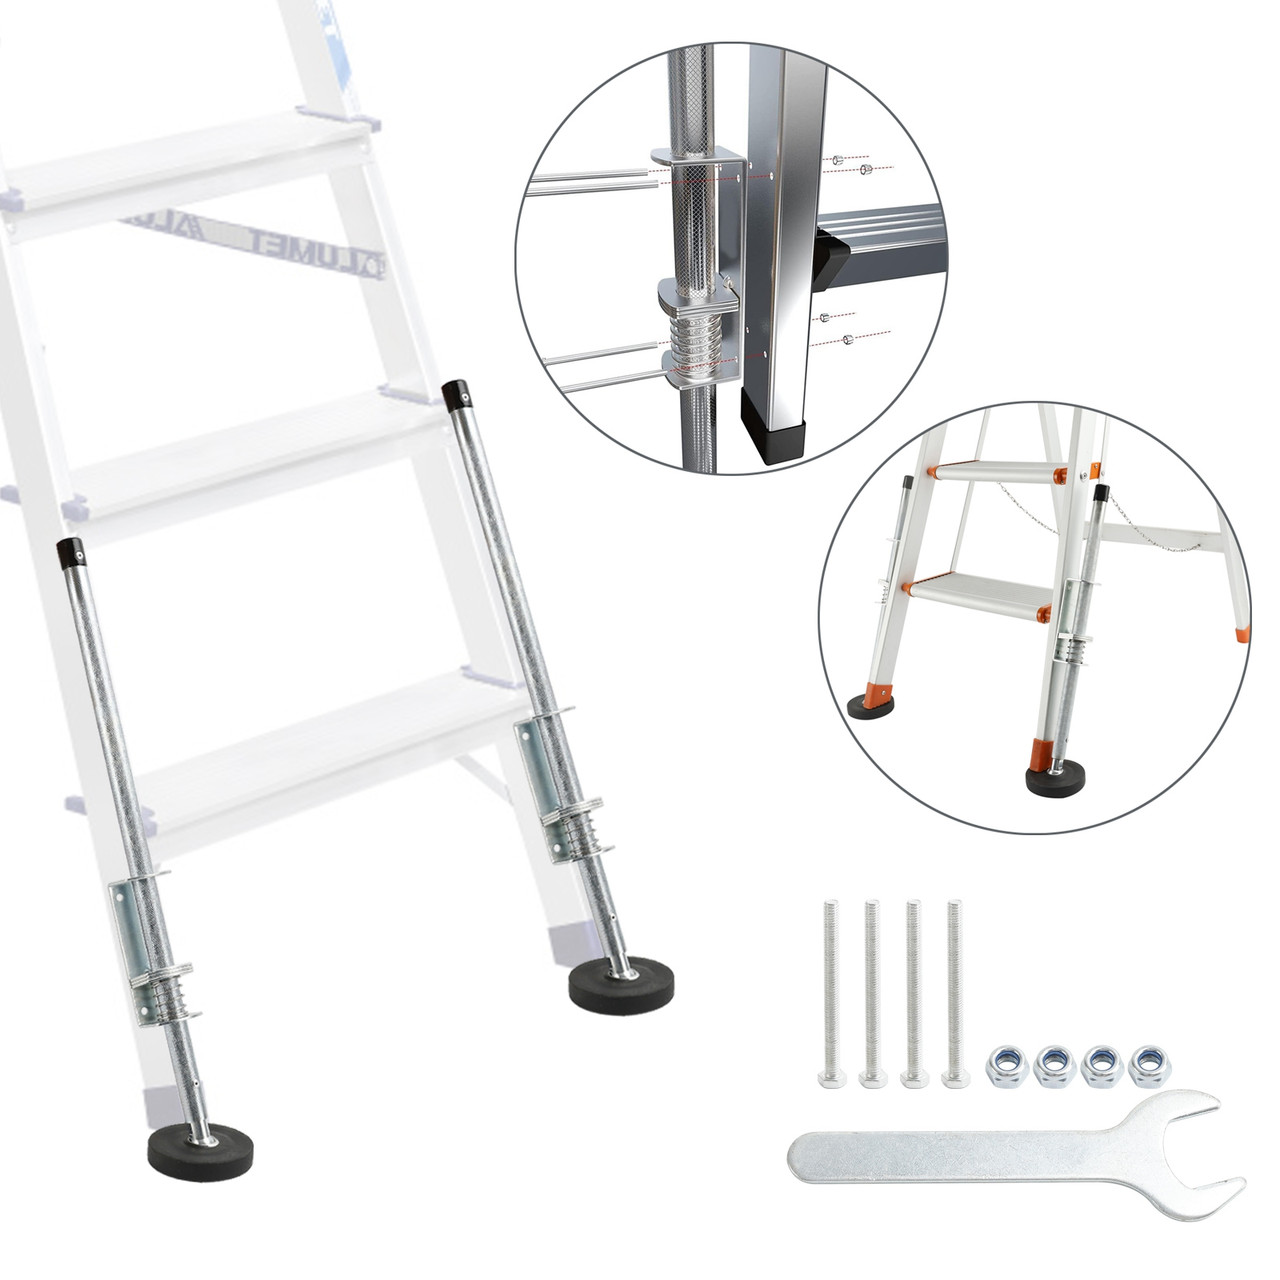 Ladder Leg Leveler for Extension Ladder Stabilizer Leg Leveling Tool 330LBS 23"